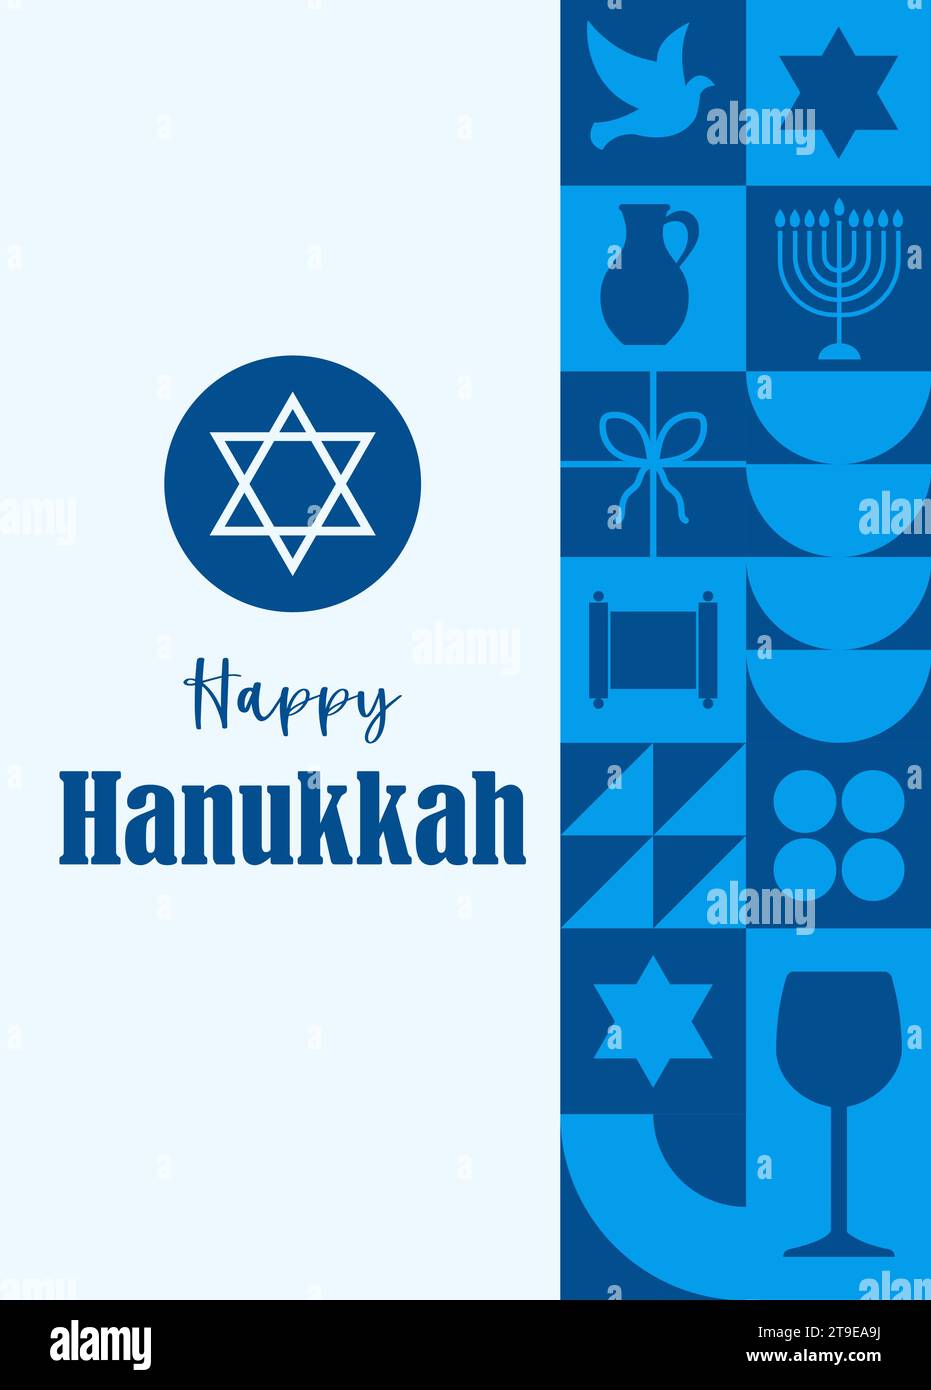 Felice cartolina di Hanukkah. Poster minimalista dal design geometrico anni '20 con elementi dalle forme tradizionali blu. Modello geometrico neo. Vettore Illustrazione Vettoriale